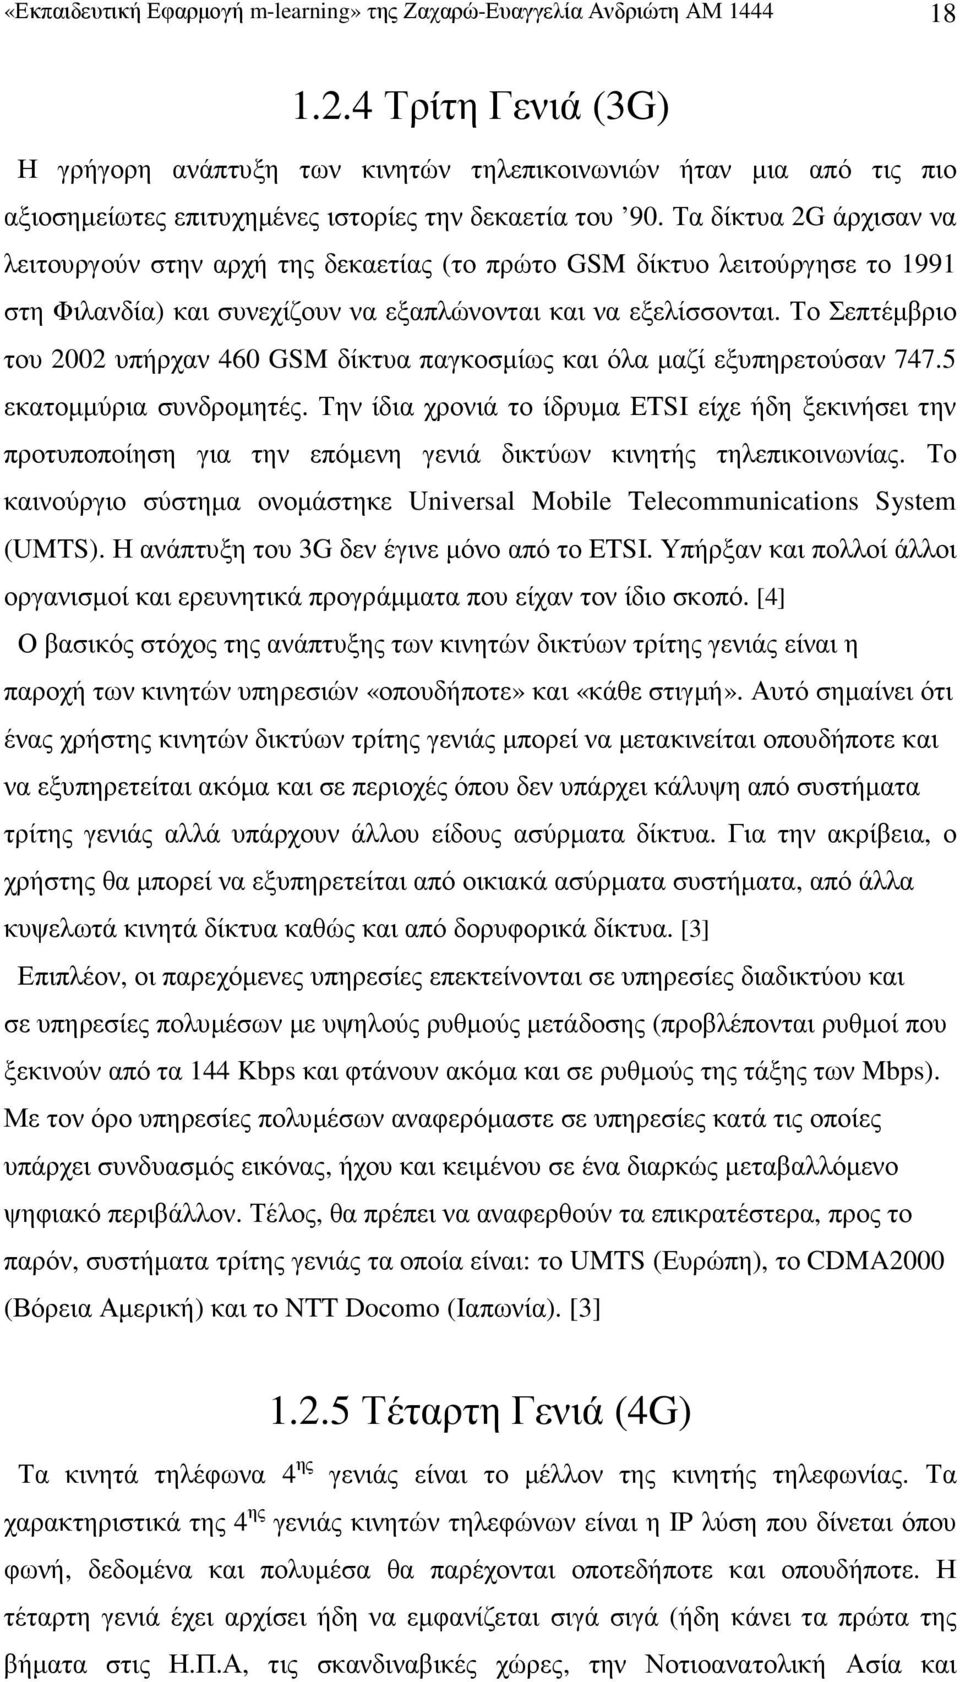 Τα δίκτυα 2G άρχισαν να λειτουργούν στην αρχή της δεκαετίας (το πρώτο GSM δίκτυο λειτούργησε το 1991 στη Φιλανδία) και συνεχίζουν να εξαπλώνονται και να εξελίσσονται.